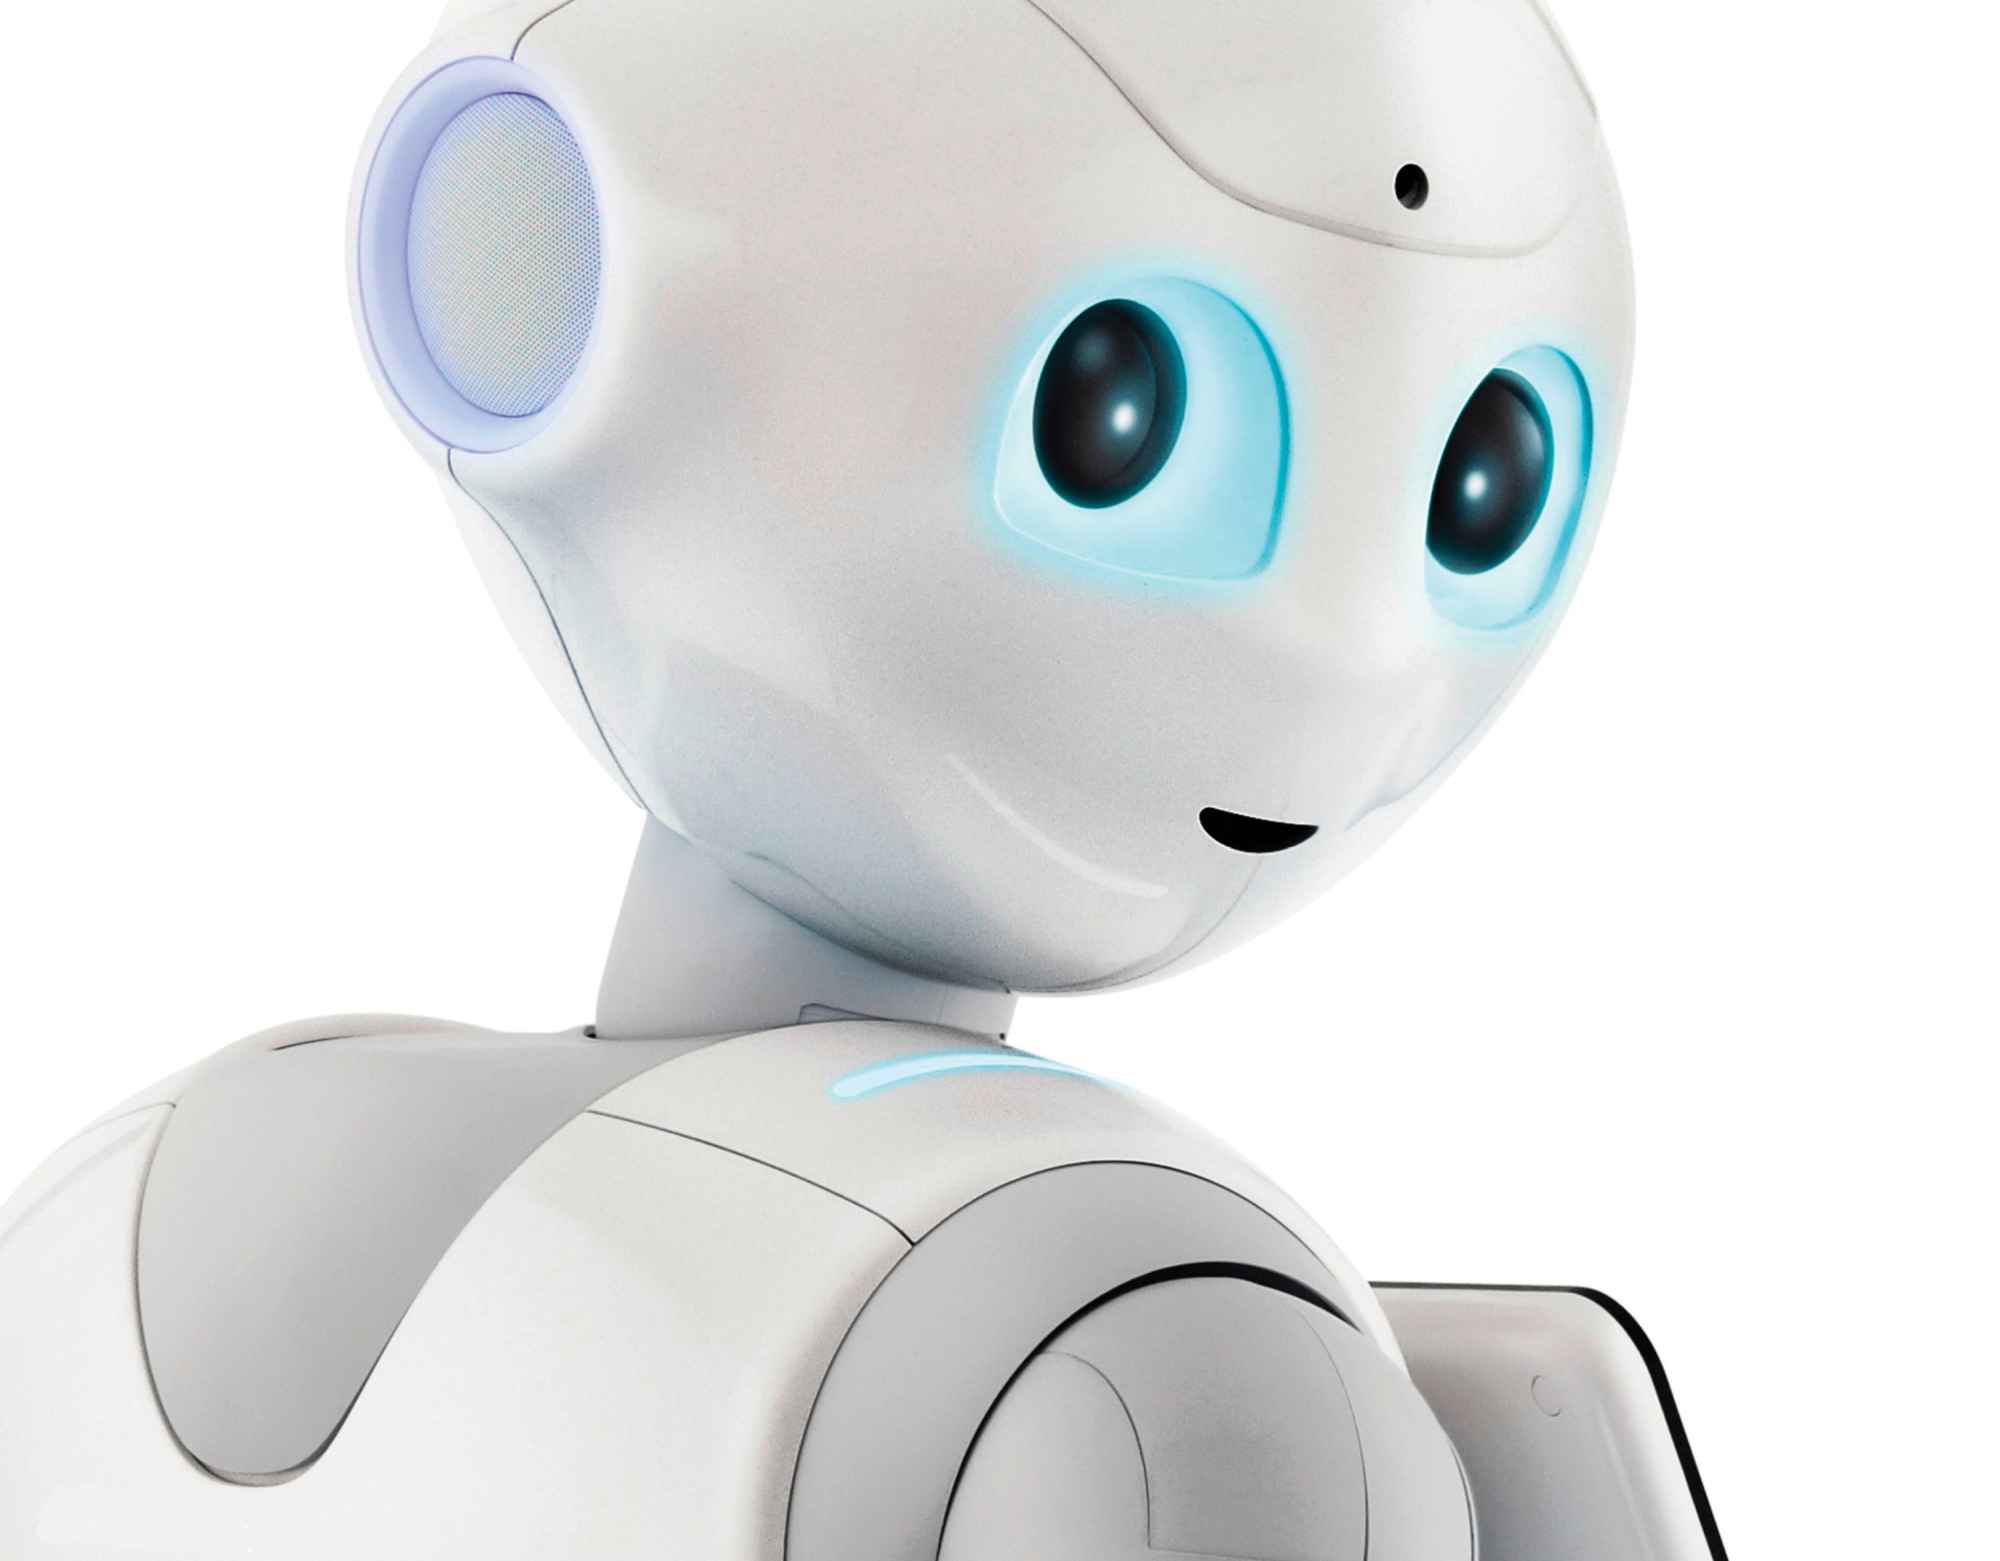 Los fabricantes de Pepper prohíben mantener relaciones sexuales con su robot